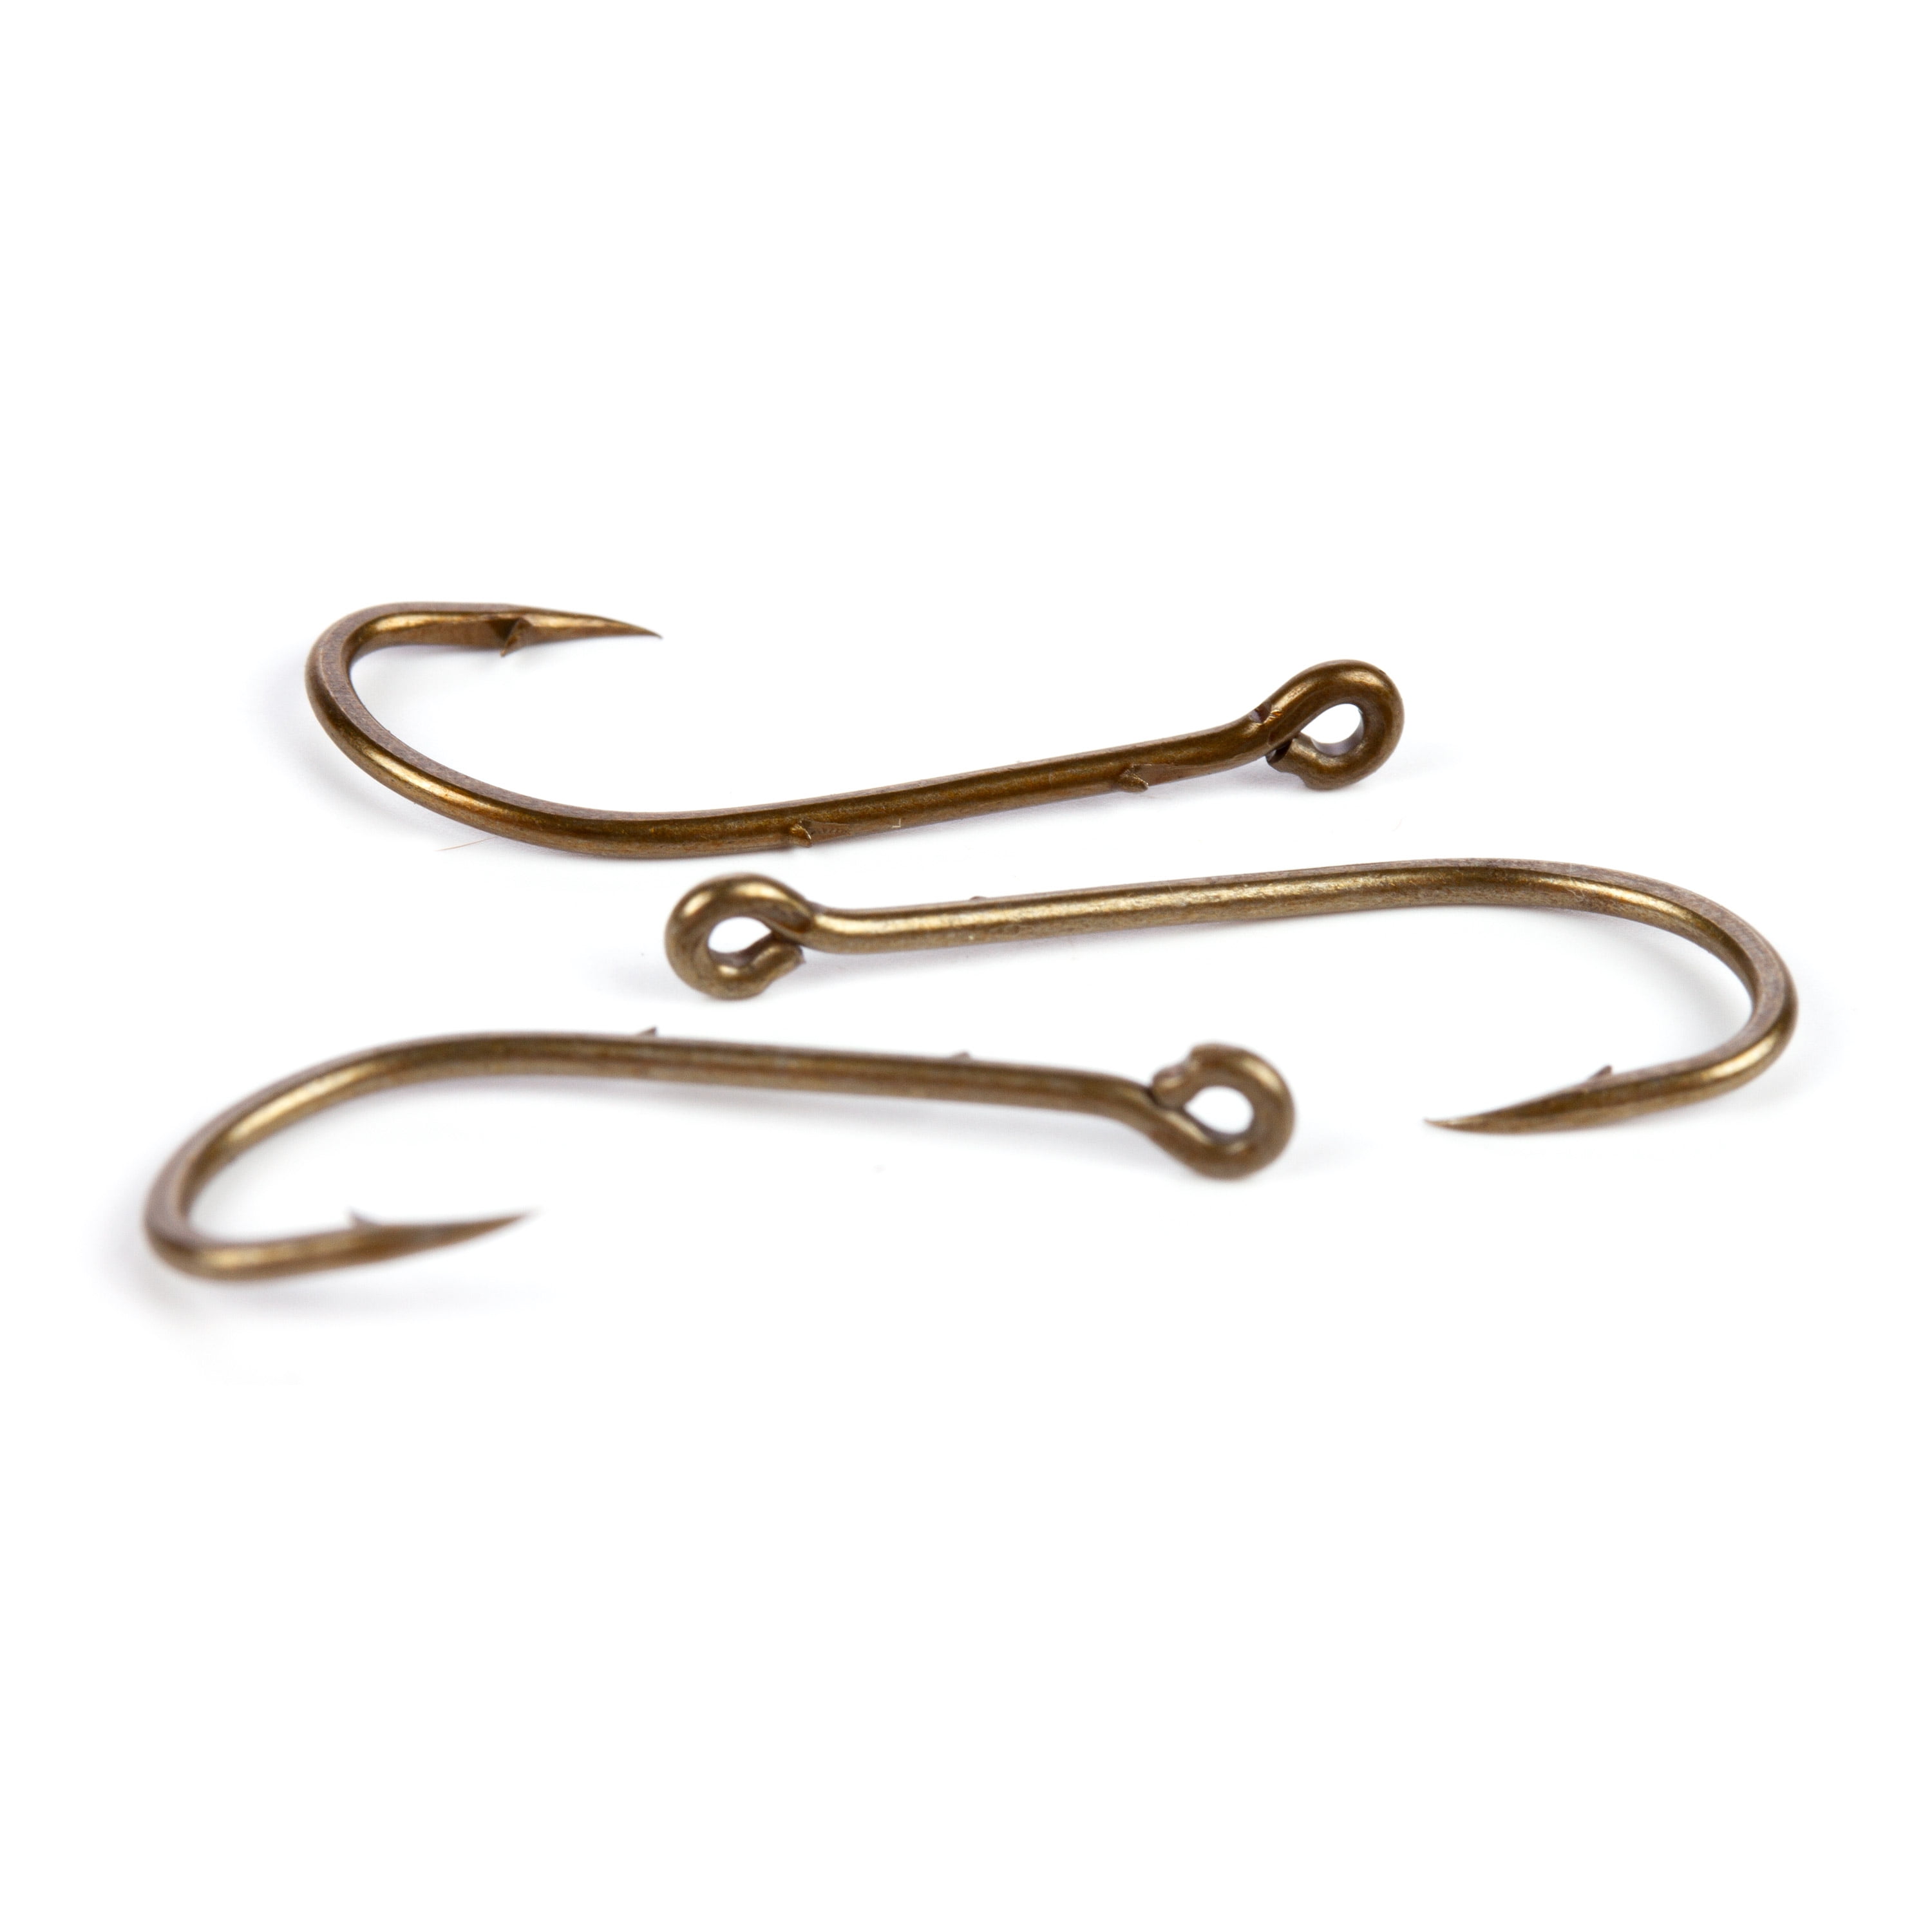 Gamakatsu 05105 Baitholder Hooks, Bronze - Size 10